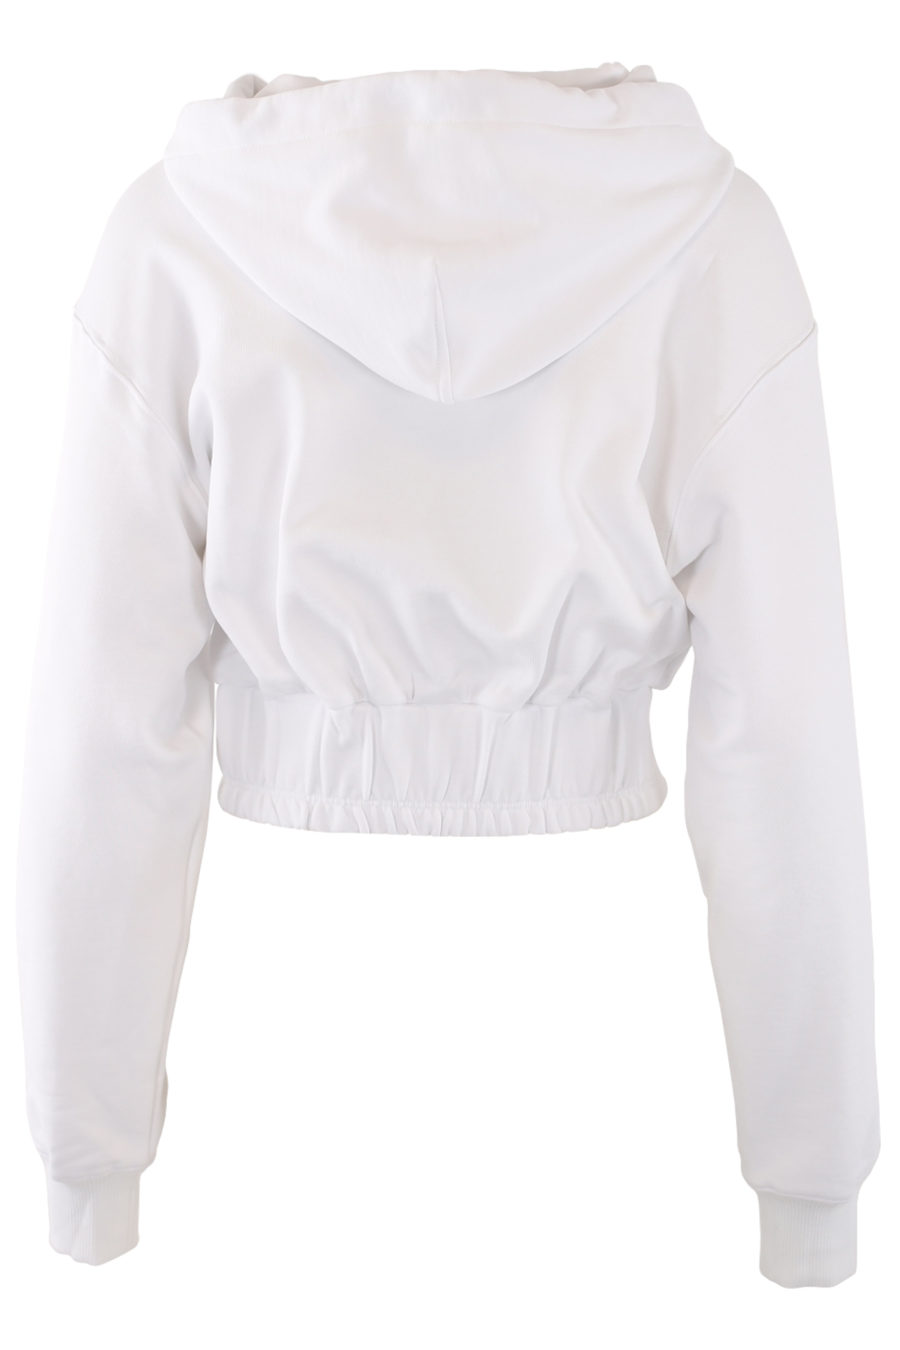 Sudadera blanca con capucha y logo blanco - IMG 0425